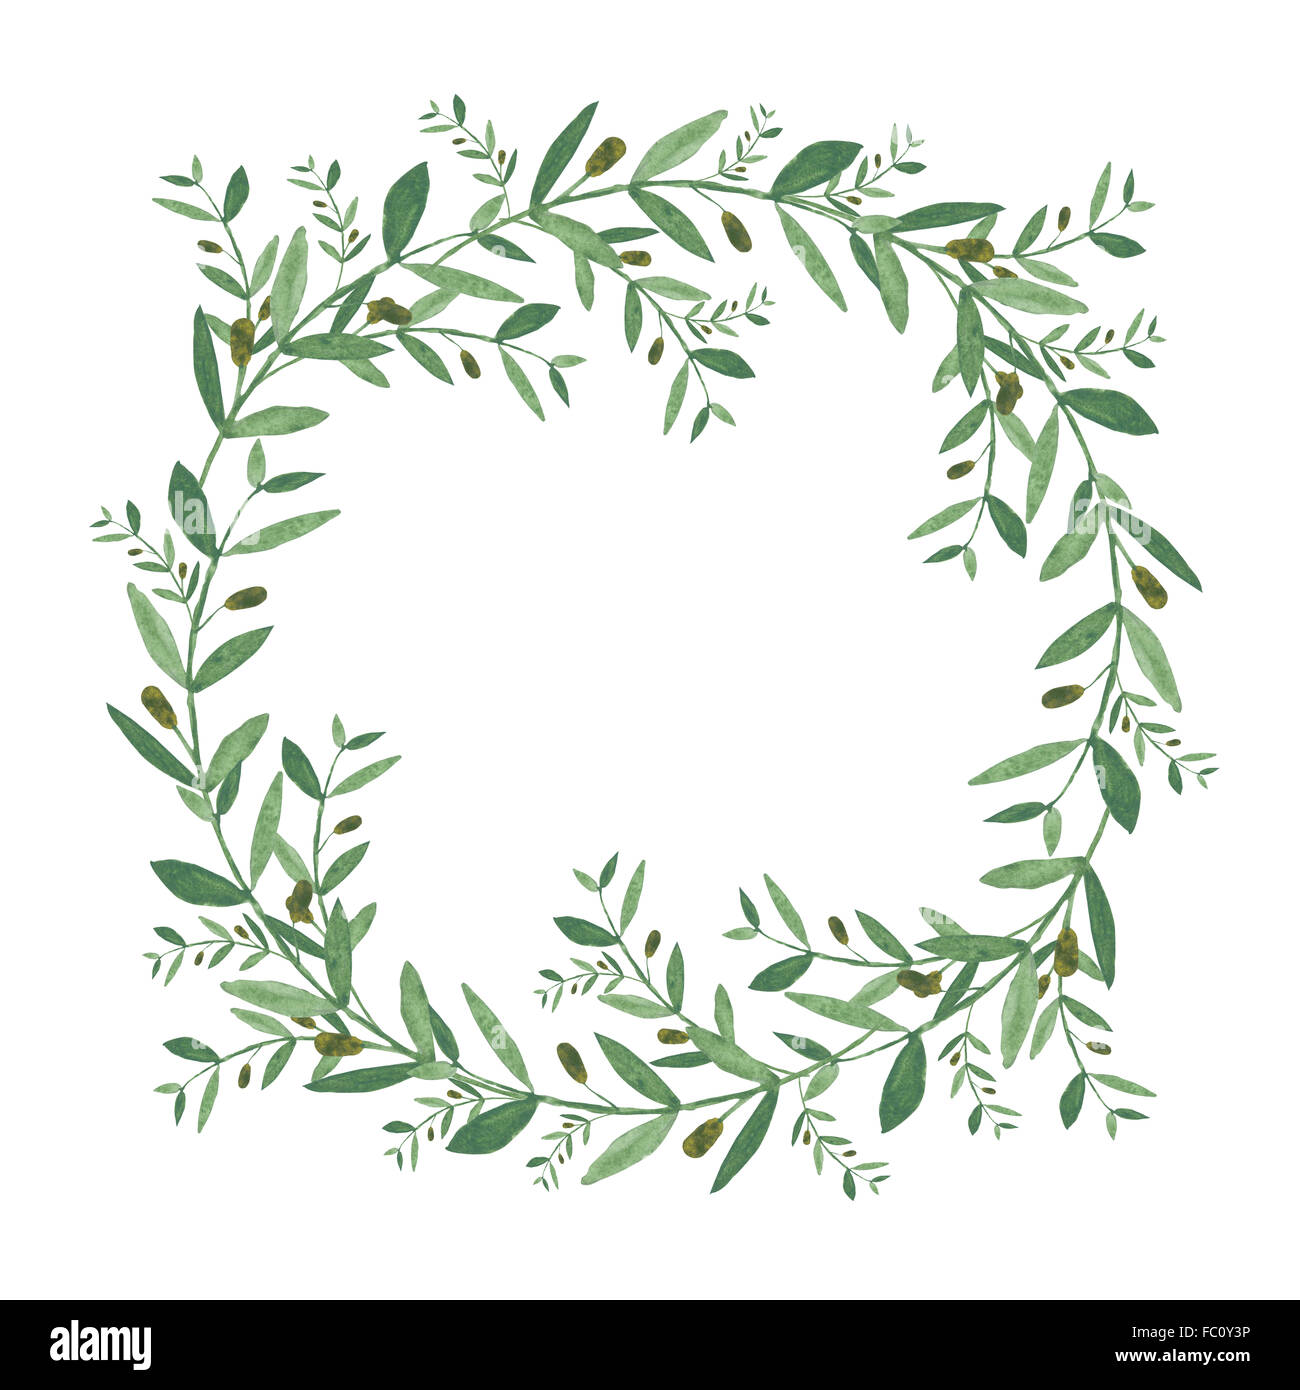 Aquarell Olive Kranz. Isolierte Darstellung auf weißem Hintergrund.  Biologische und natürliche Konzept Stockfotografie - Alamy